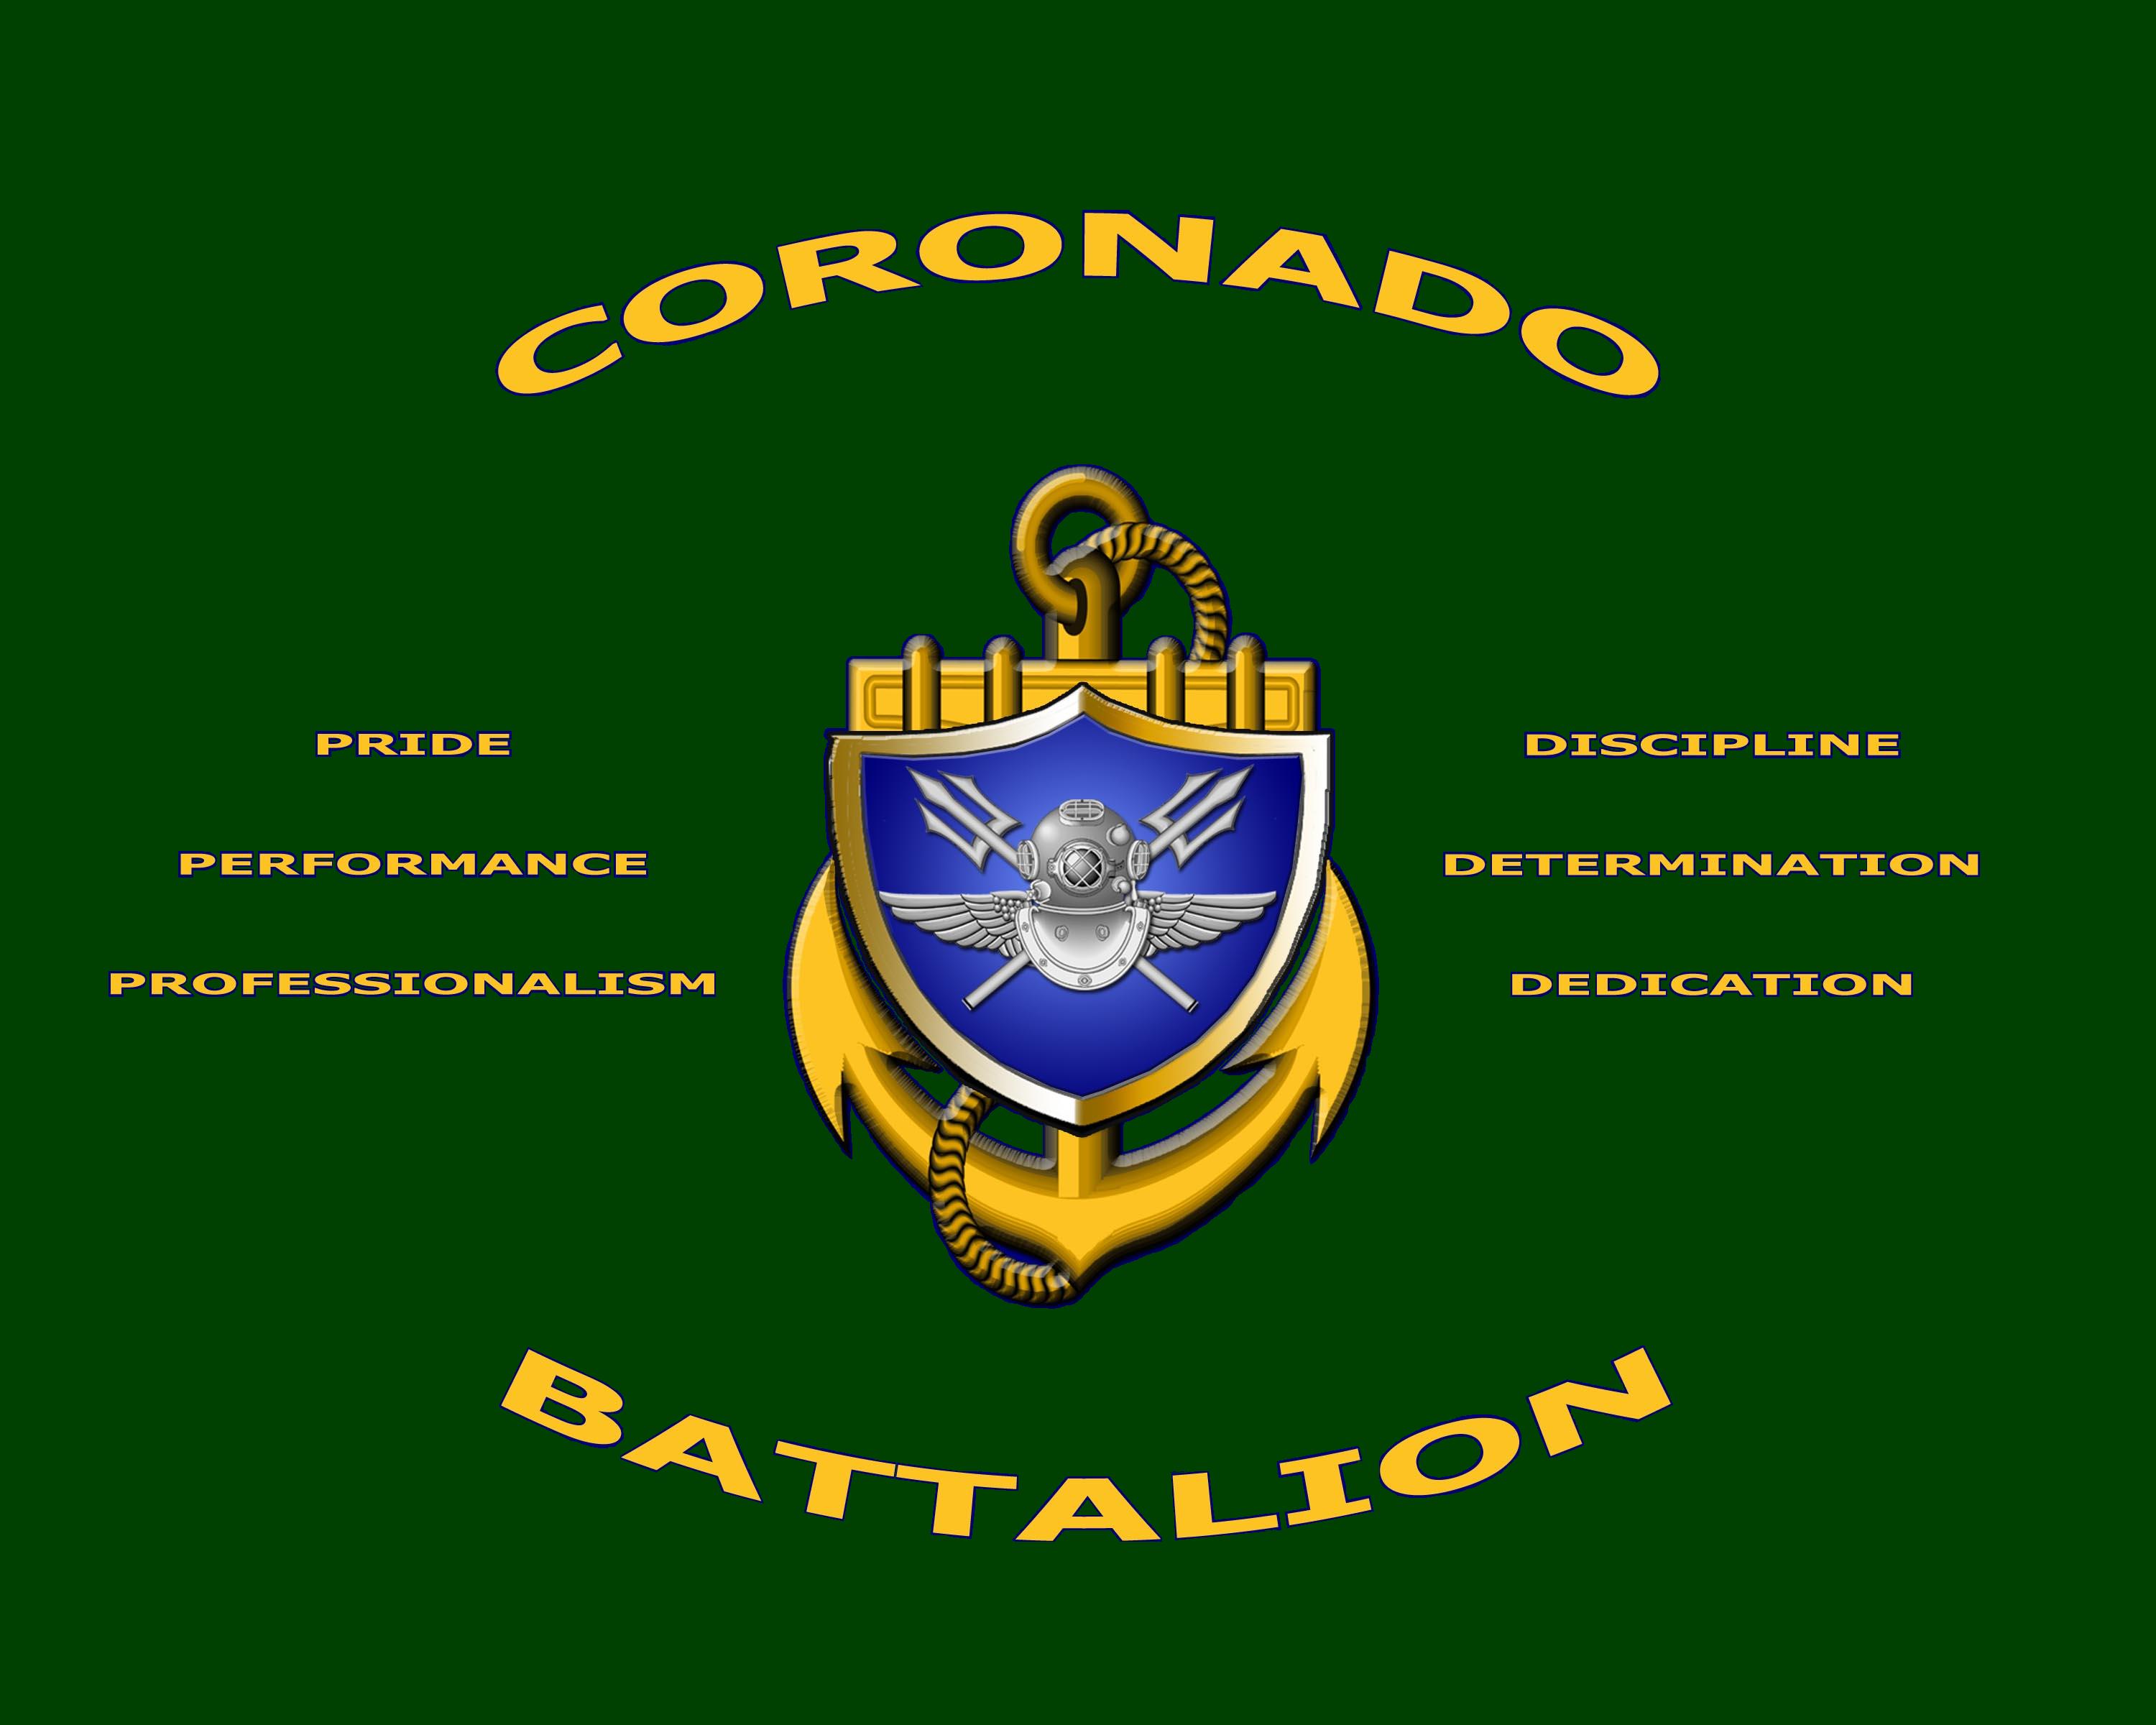 Coronado Battalion